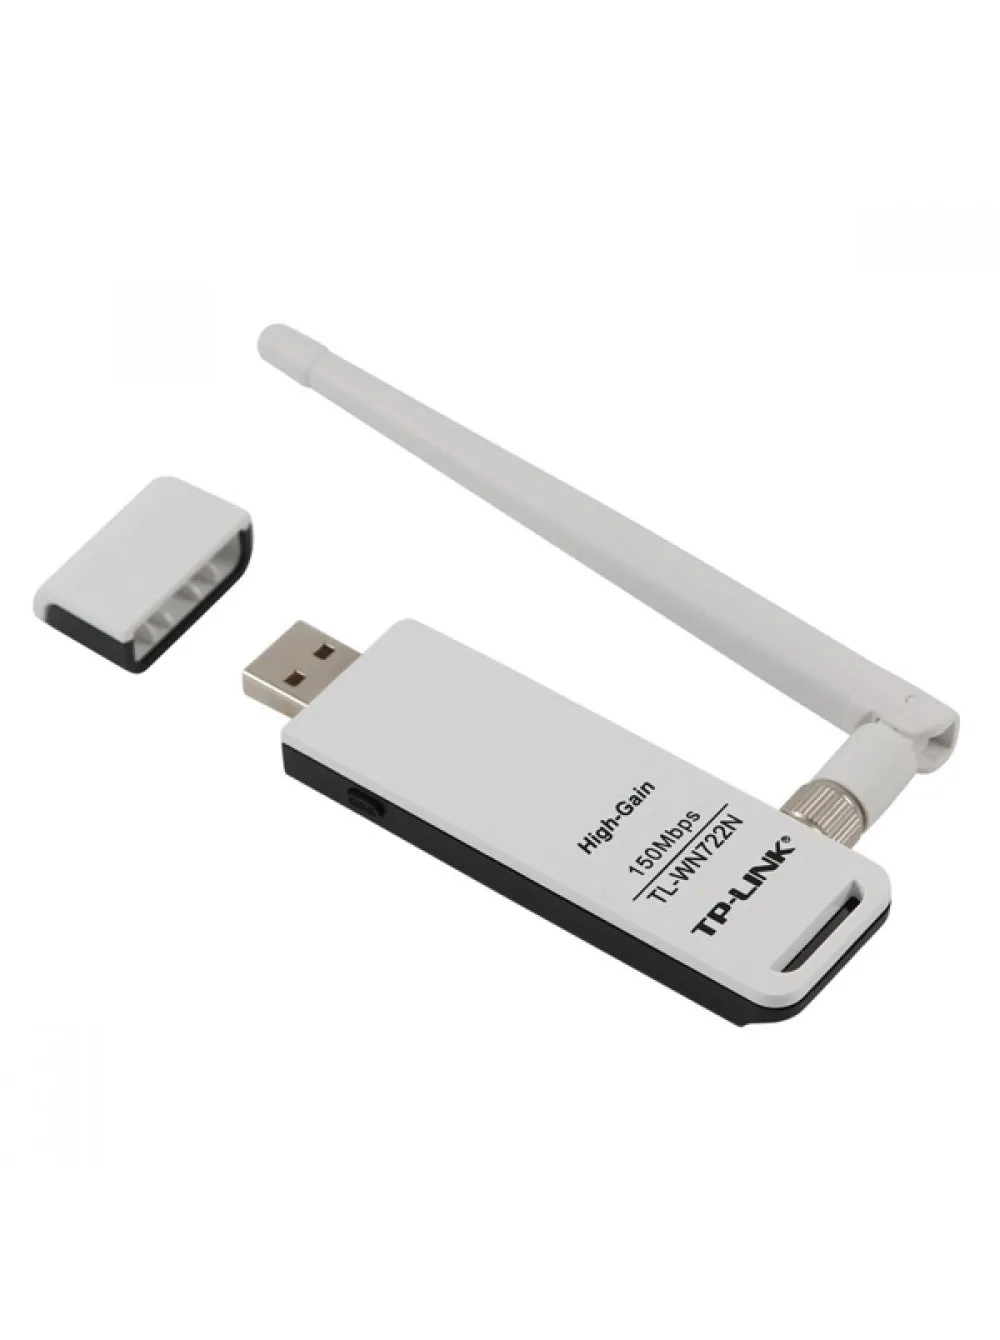 WiFi адаптер TL-WN722N High Gain Wireless N USB Adapter, Atheros, 1T1R, 2.4GHz, 802.11n/g/b, 1 detachable antenna#2